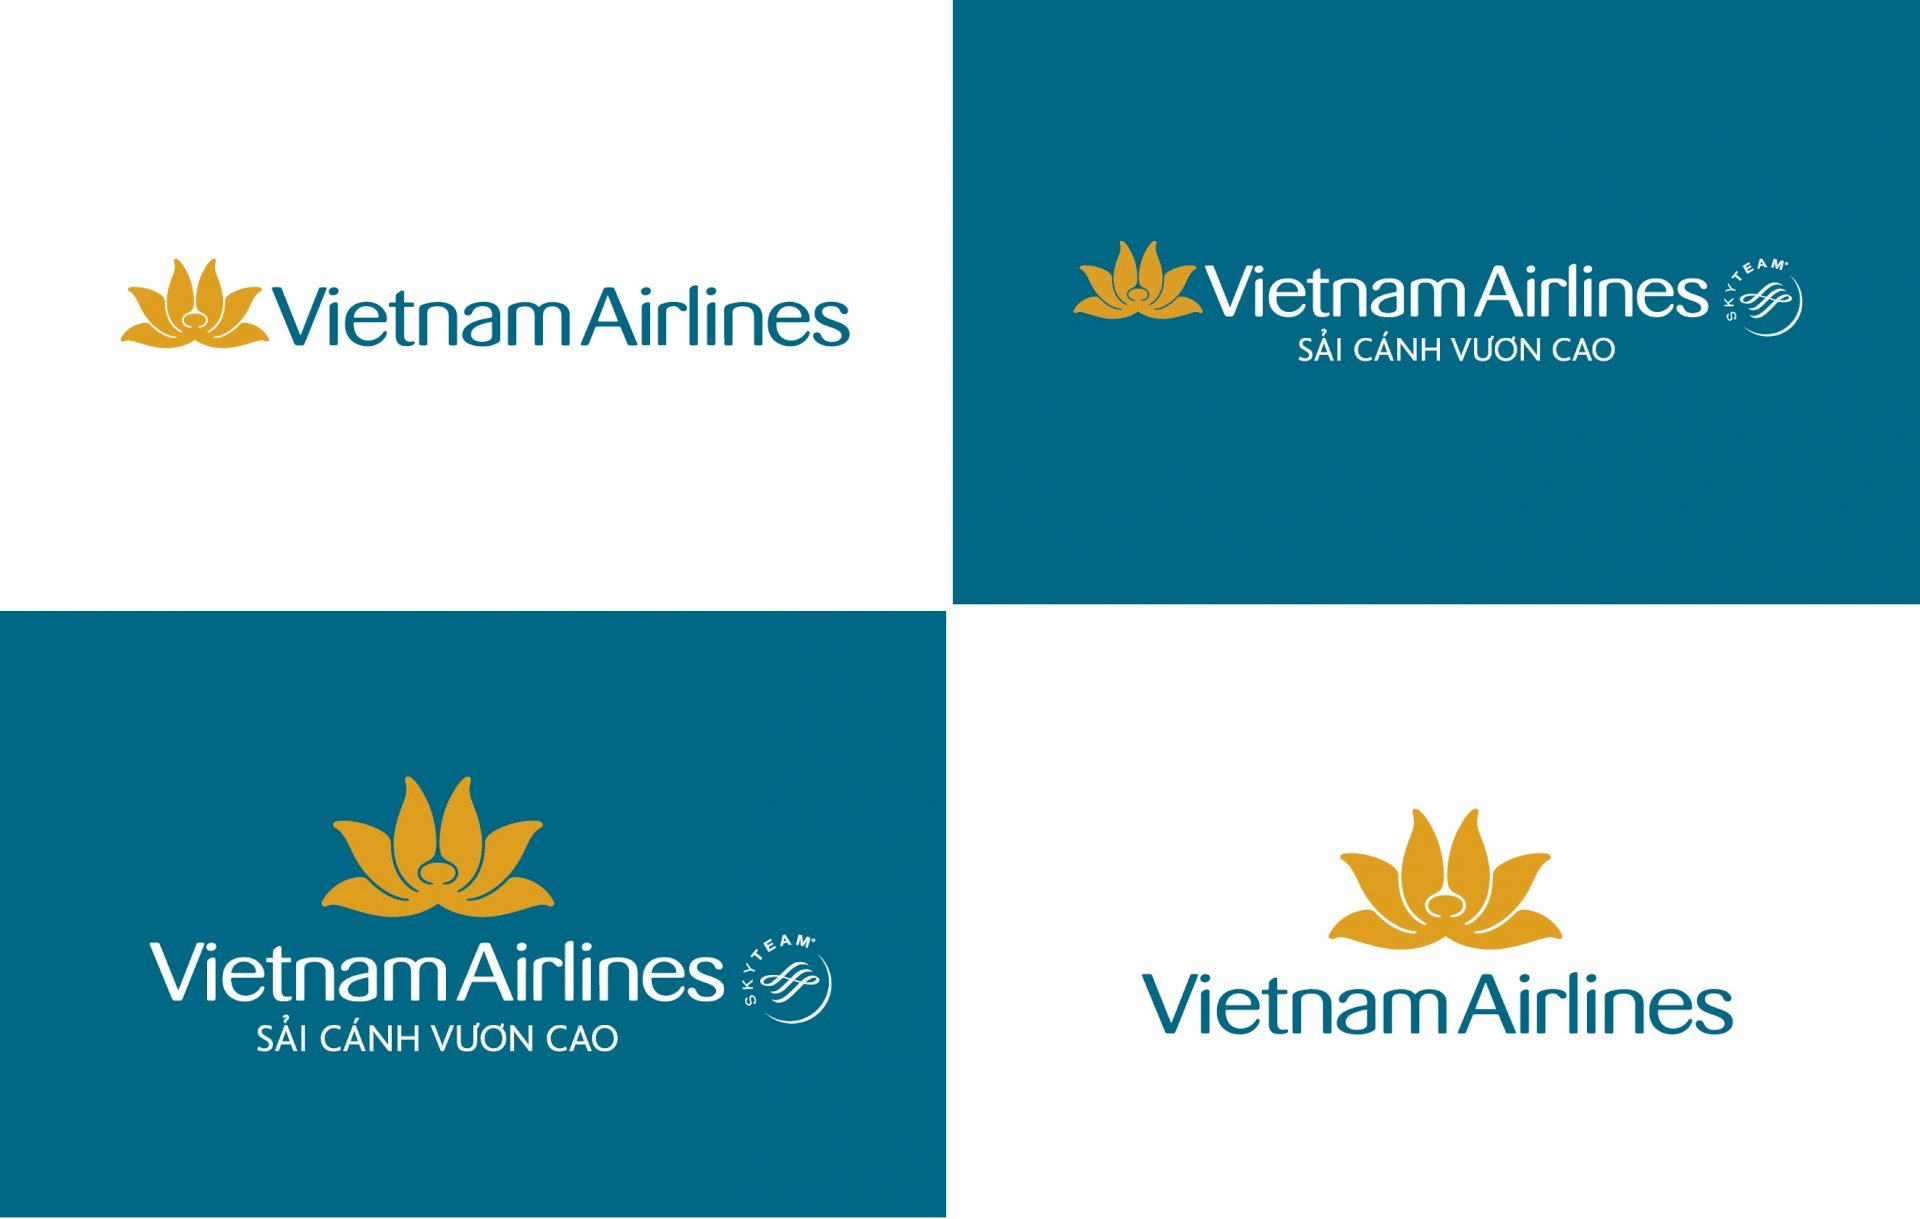 Vietnam Airlines: Vietnam Airlines luôn làm việc chăm chỉ để mang đến những trải nghiệm du lịch tuyệt vời cho khách hàng. Với đội ngũ nhân viên chuyên nghiệp, dịch vụ hành khách chu đáo và những điểm đến tuyệt vời trên khắp thế giới, Vietnam Airlines là sự lựa chọn hoàn hảo để khám phá thế giới!